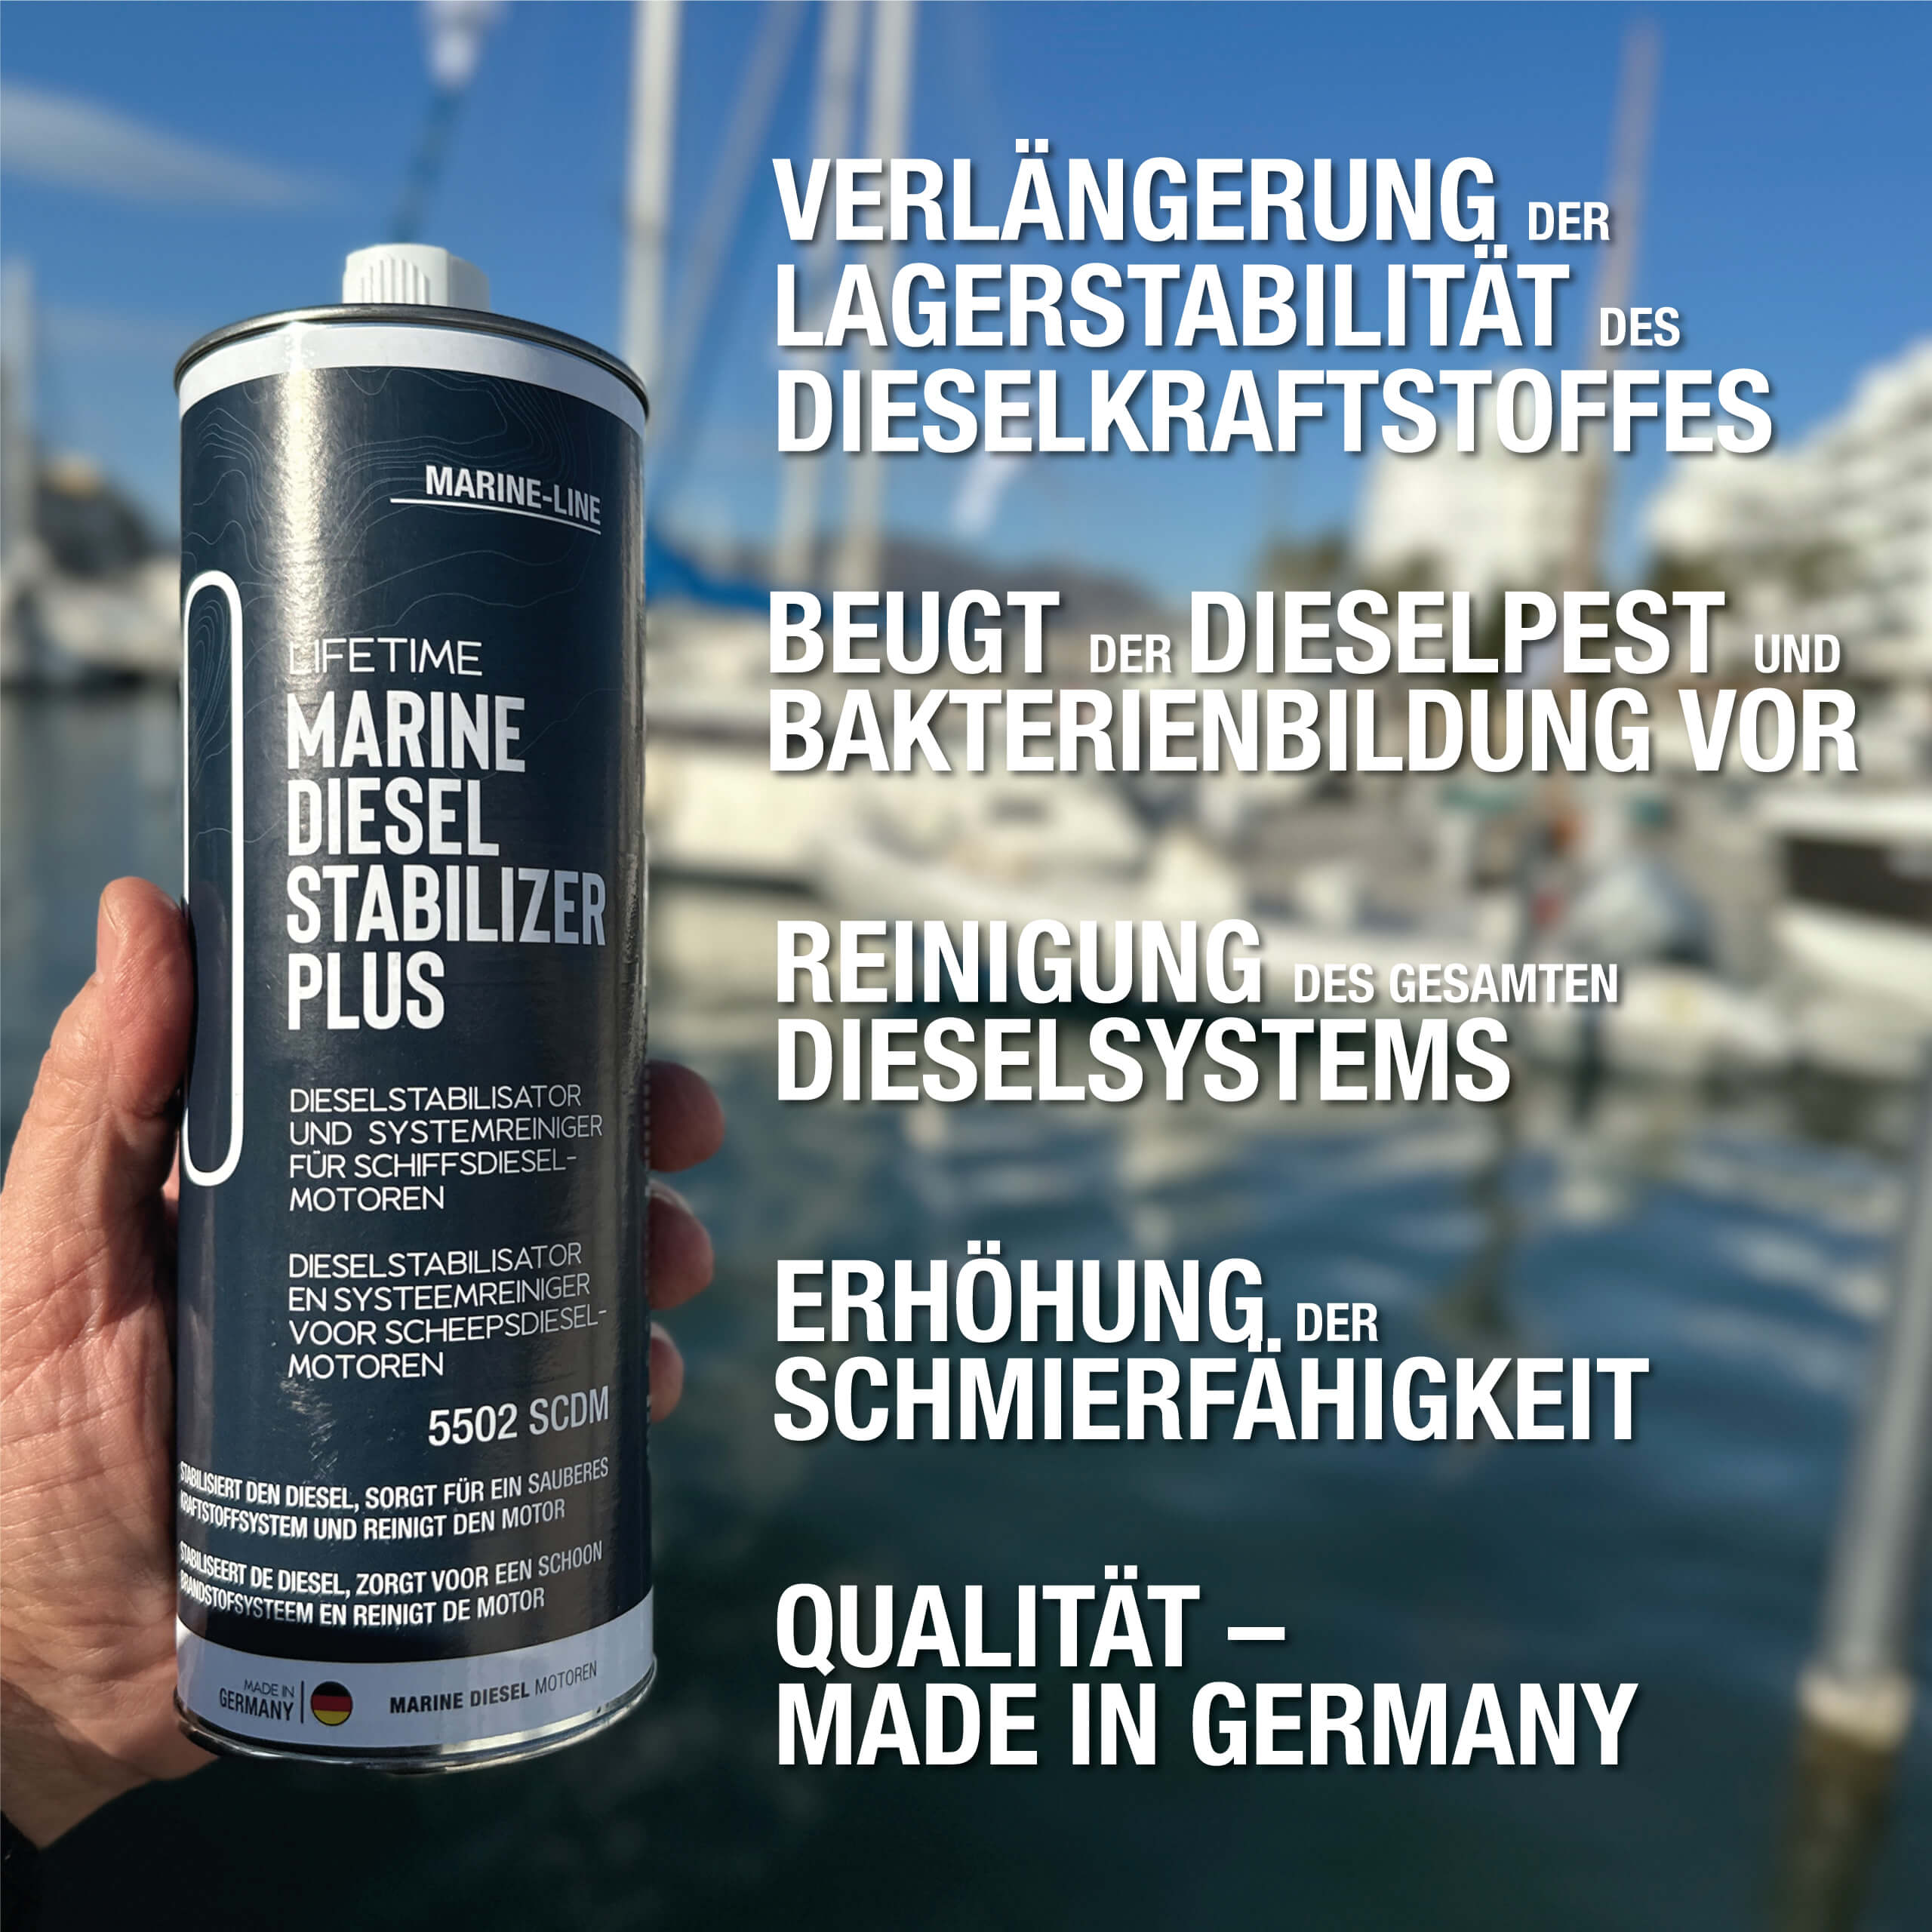 Eine Männerhand hält eine Dose Lifetime Marine Diesel Stabilizer Plus. Yachthafen im Hintergrund. Bild-Beschriftung mit fünf Produktvorteilen.